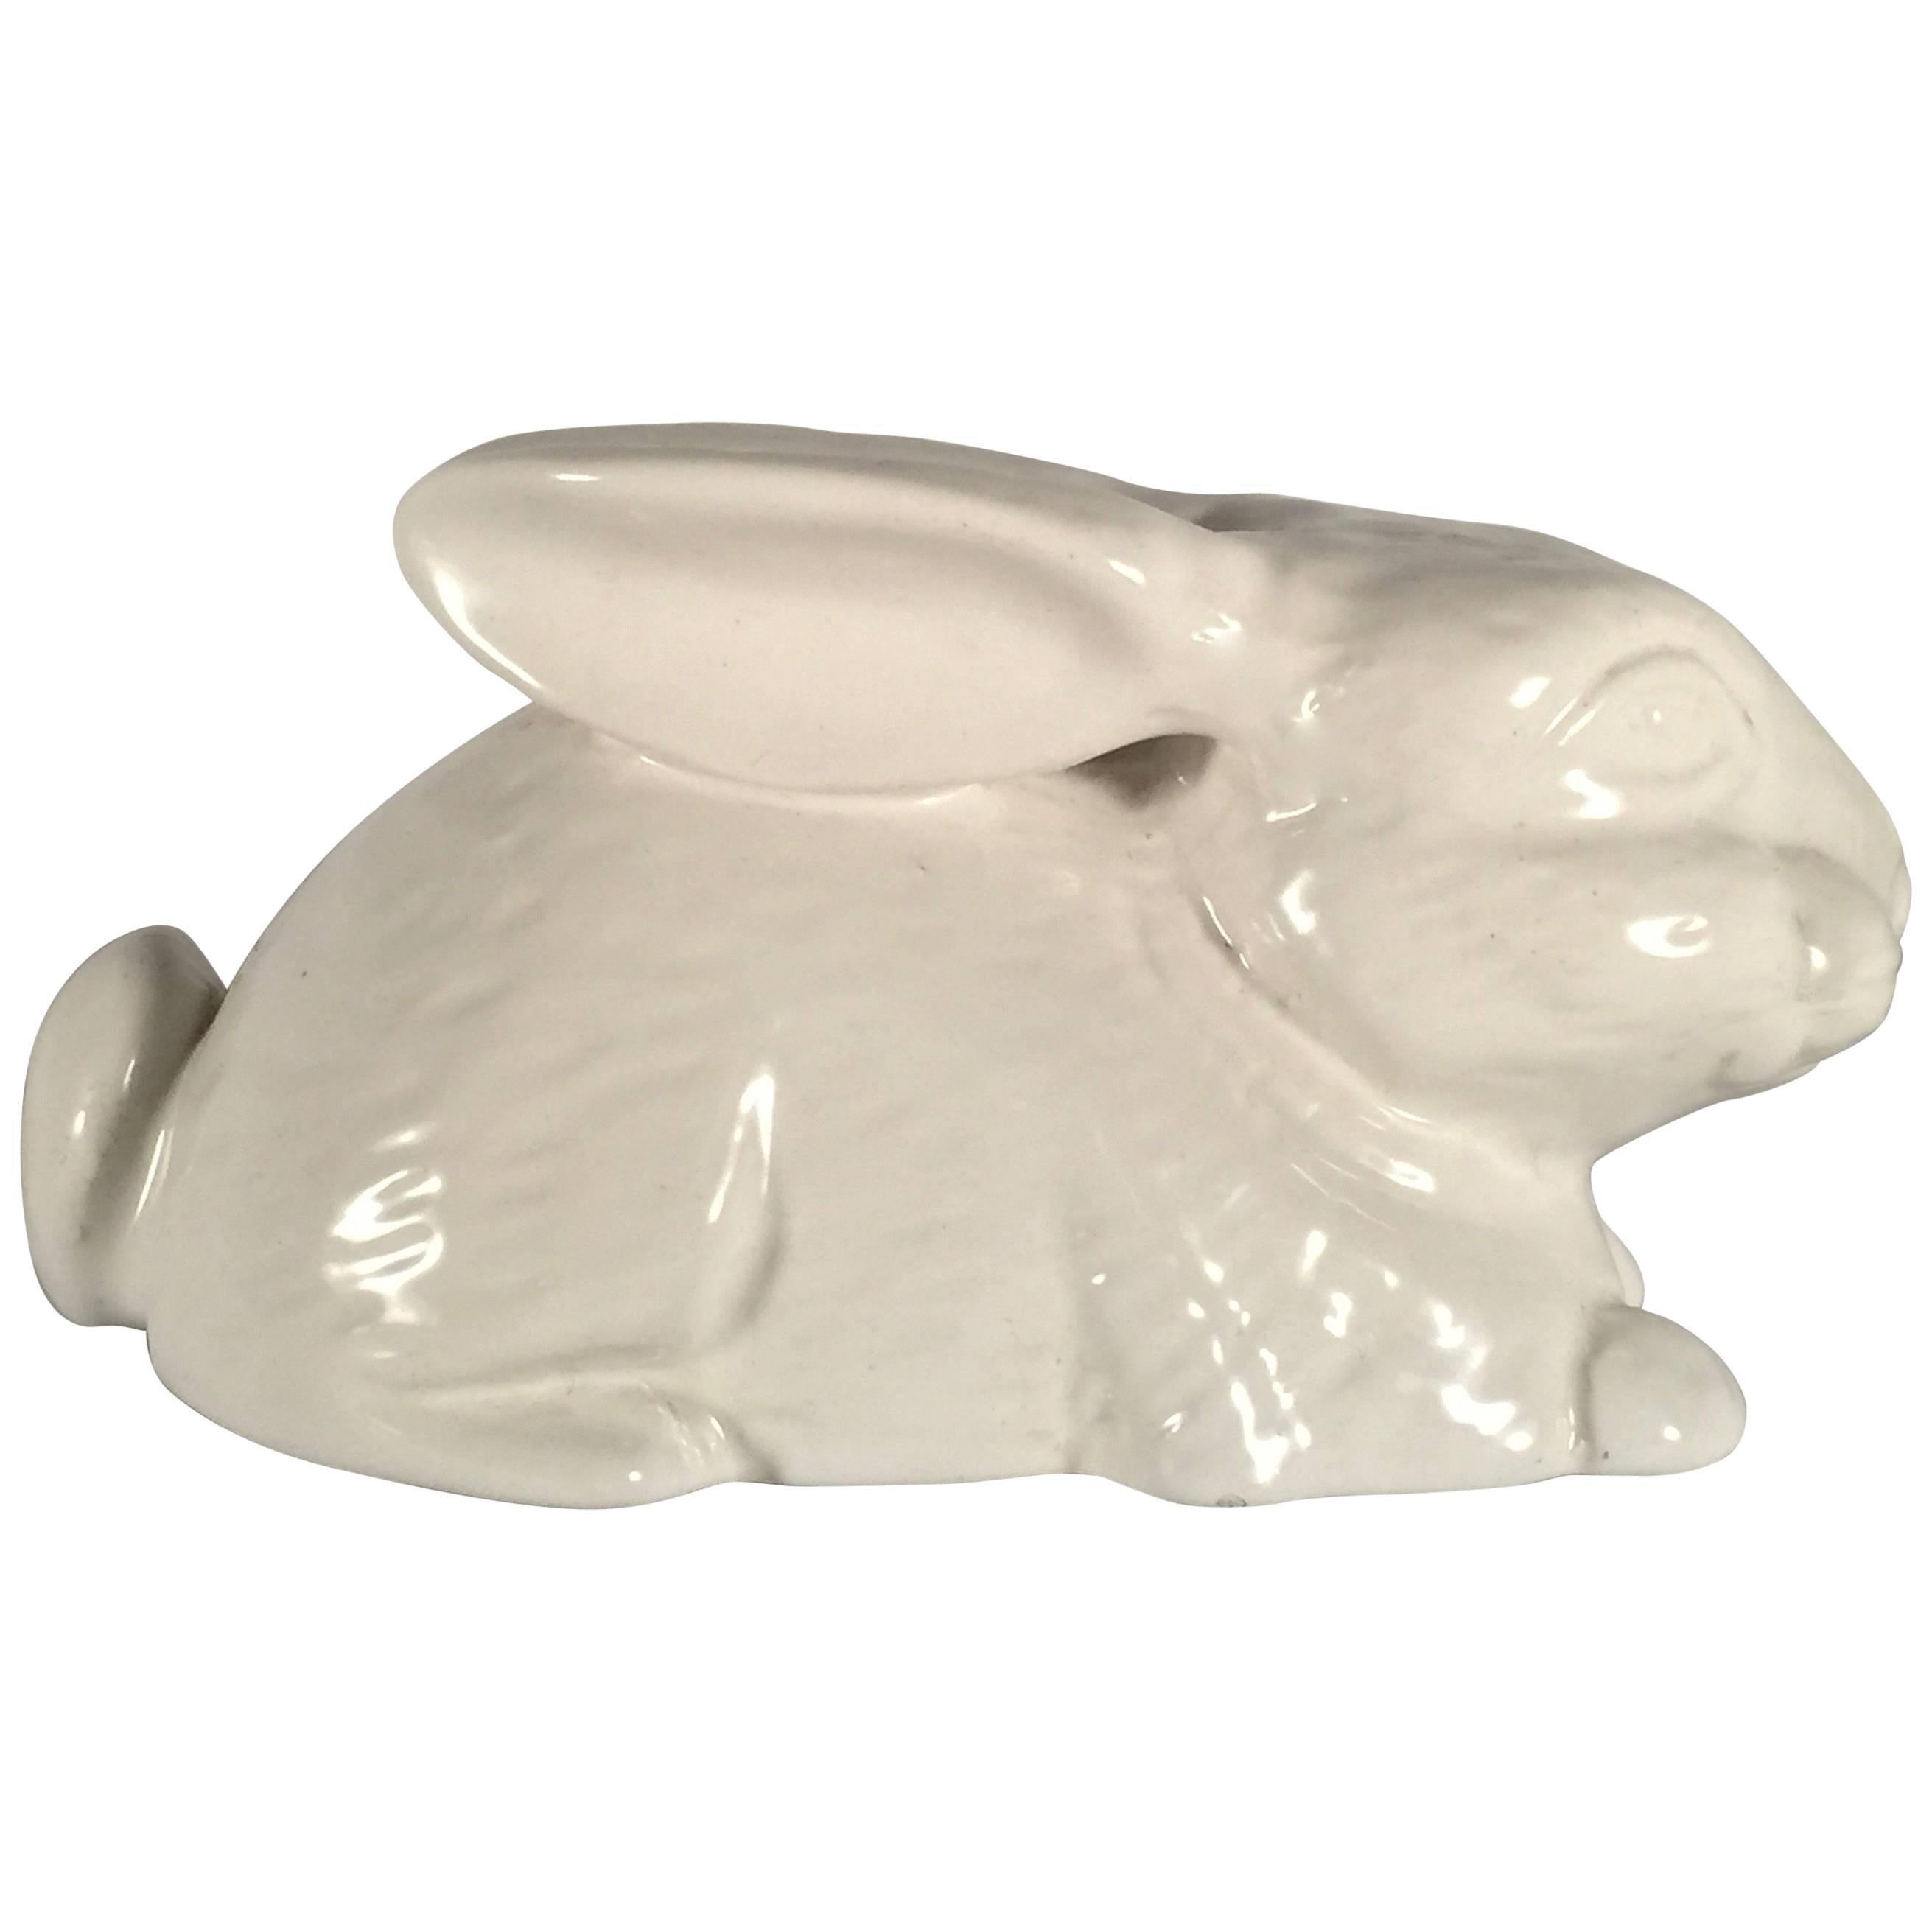 Seltener Tommaso Barbi Weißer Keramik-Kaninchen, signiert, 1960er Jahre, Italien